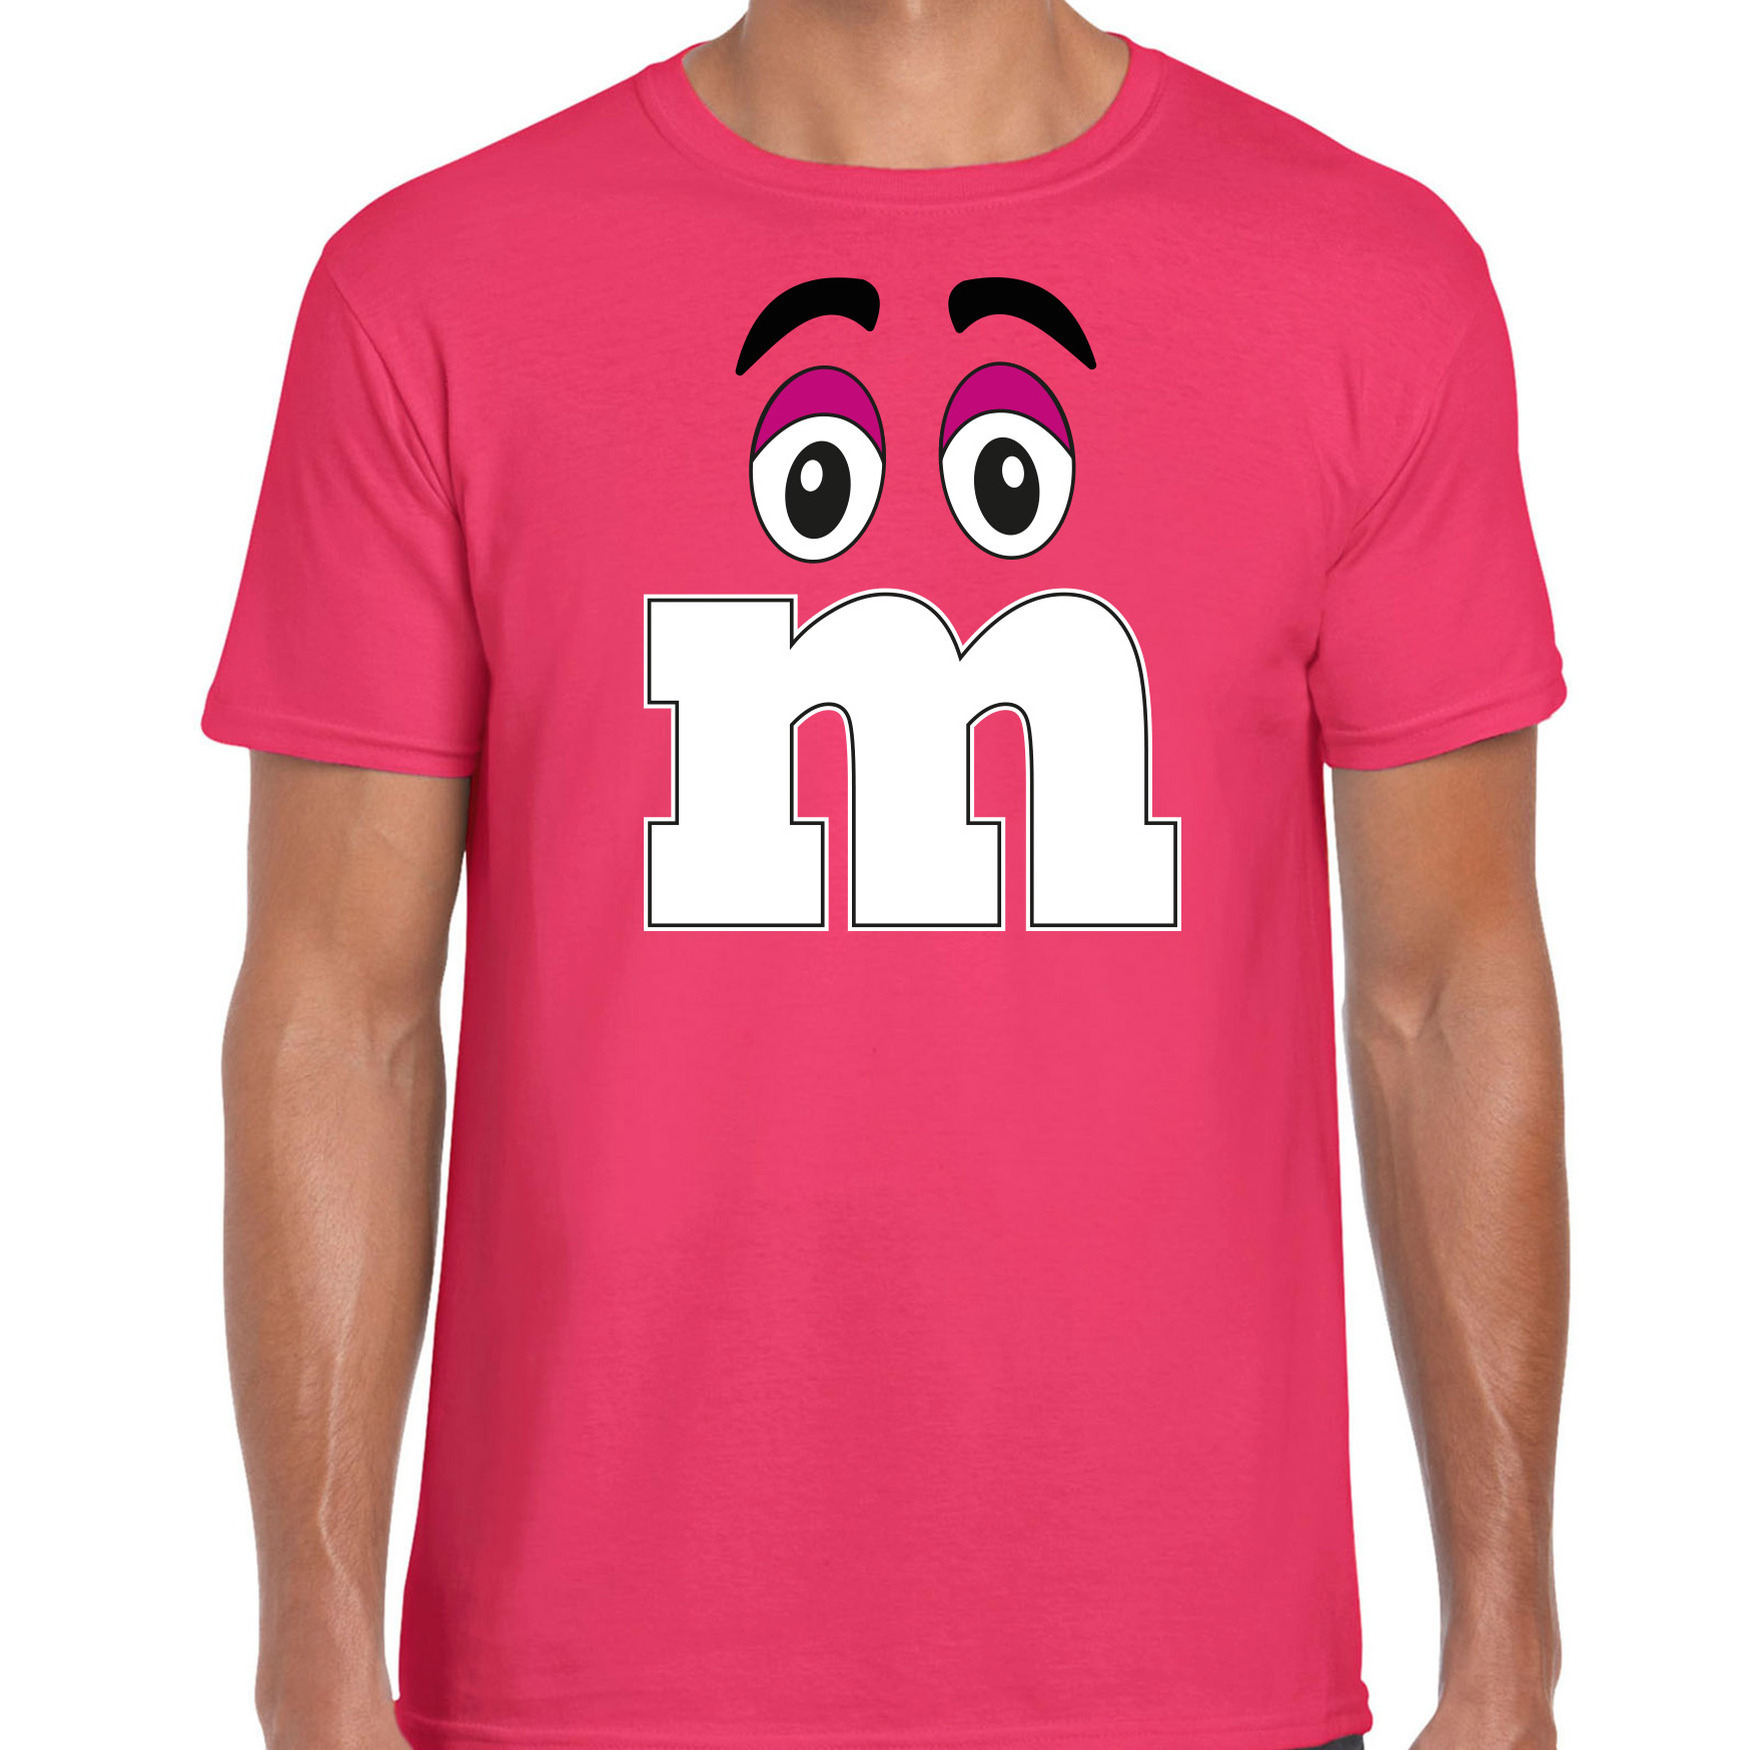 Verkleed t-shirt M voor heren roze carnaval-themafeest kostuum